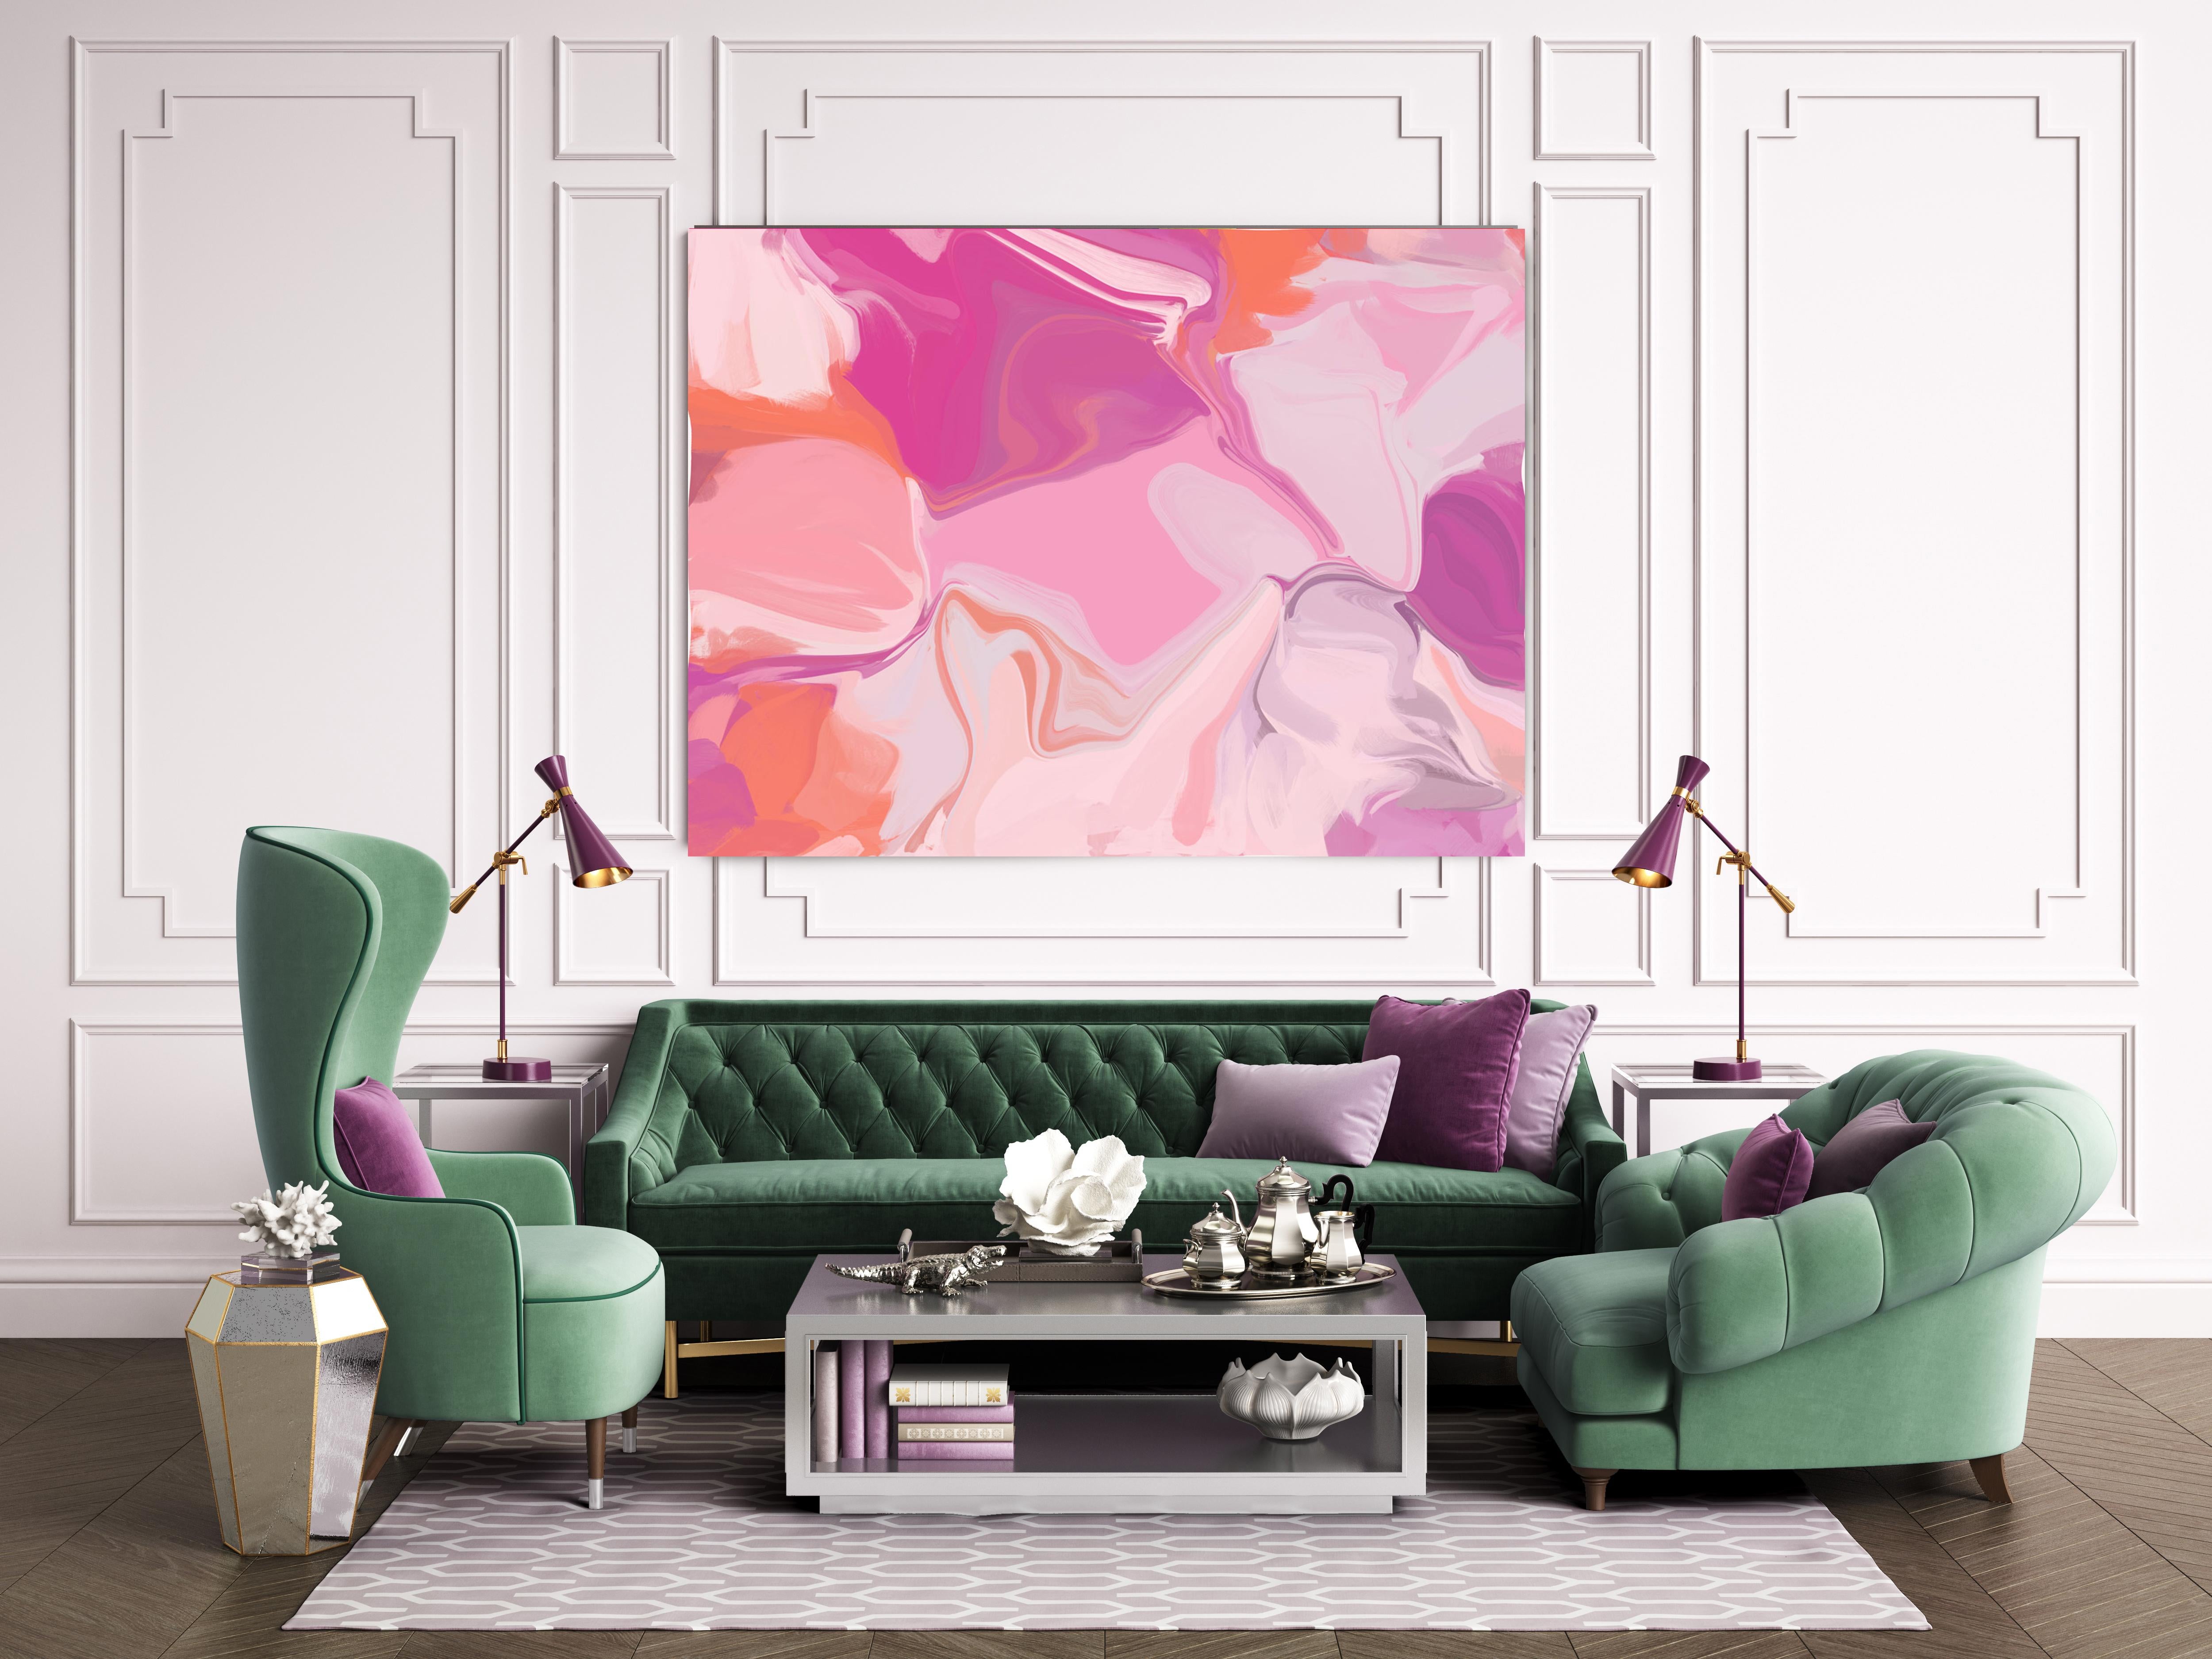 Abstract Painting Irena Orlov - Peinture sur toile de technique mixte abstraite contemporaine couleur éclatante rose pourpre